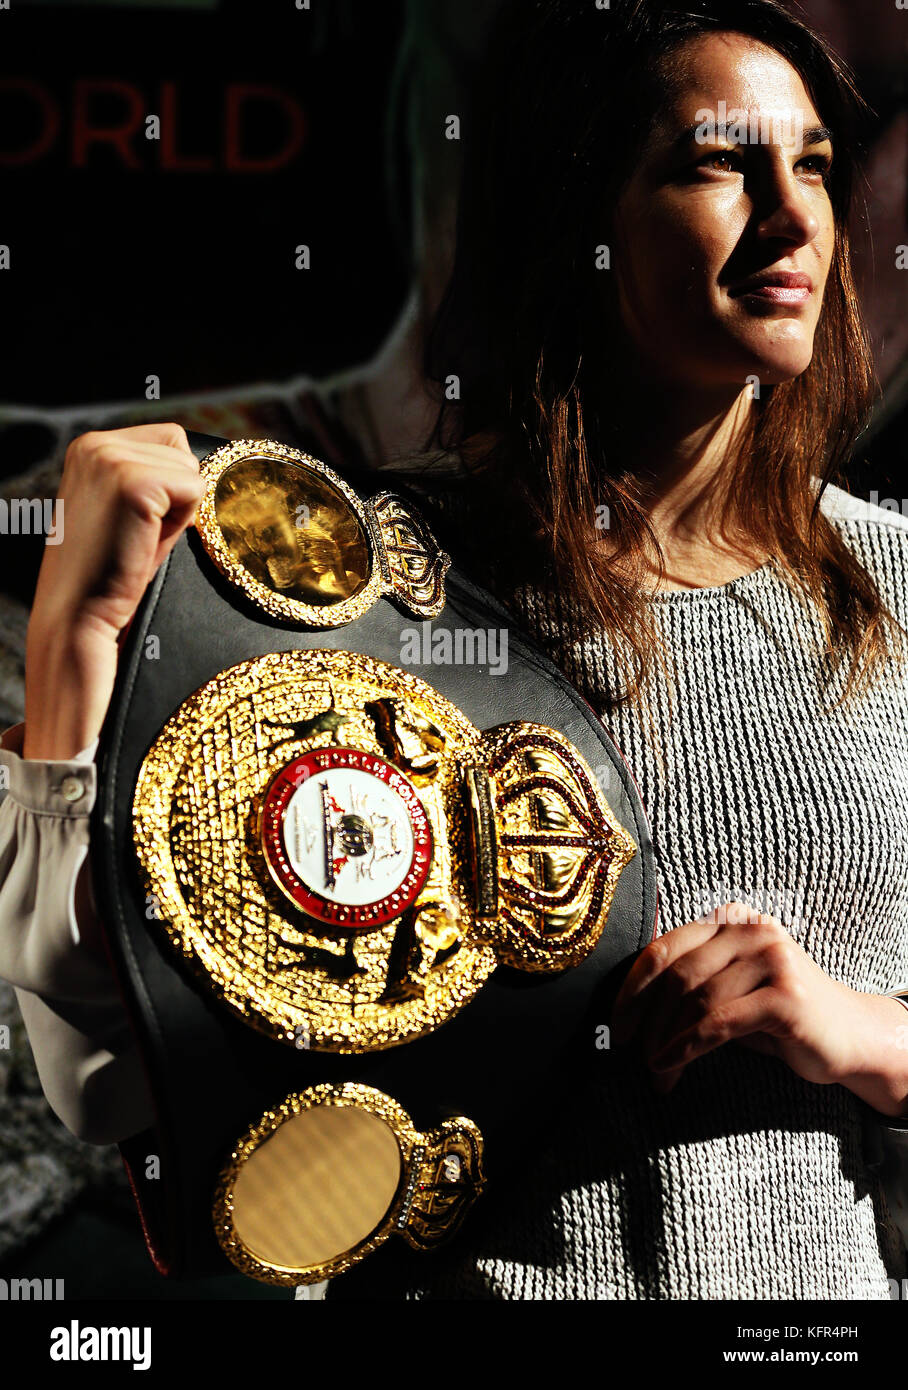 Die WBA-Leichtgewichtweltmeisterin Katie Taylor wurde während einer Pressekonferenz im Irish Film Institute in Dublin zur neuen WBA-Weltmeisterin gekürt. DRÜCKEN Sie VERBANDSFOTO. Bilddatum: Dienstag, 31. Oktober 2017. Bildnachweis sollte lauten: Brian Lawless/PA Wire Stockfoto